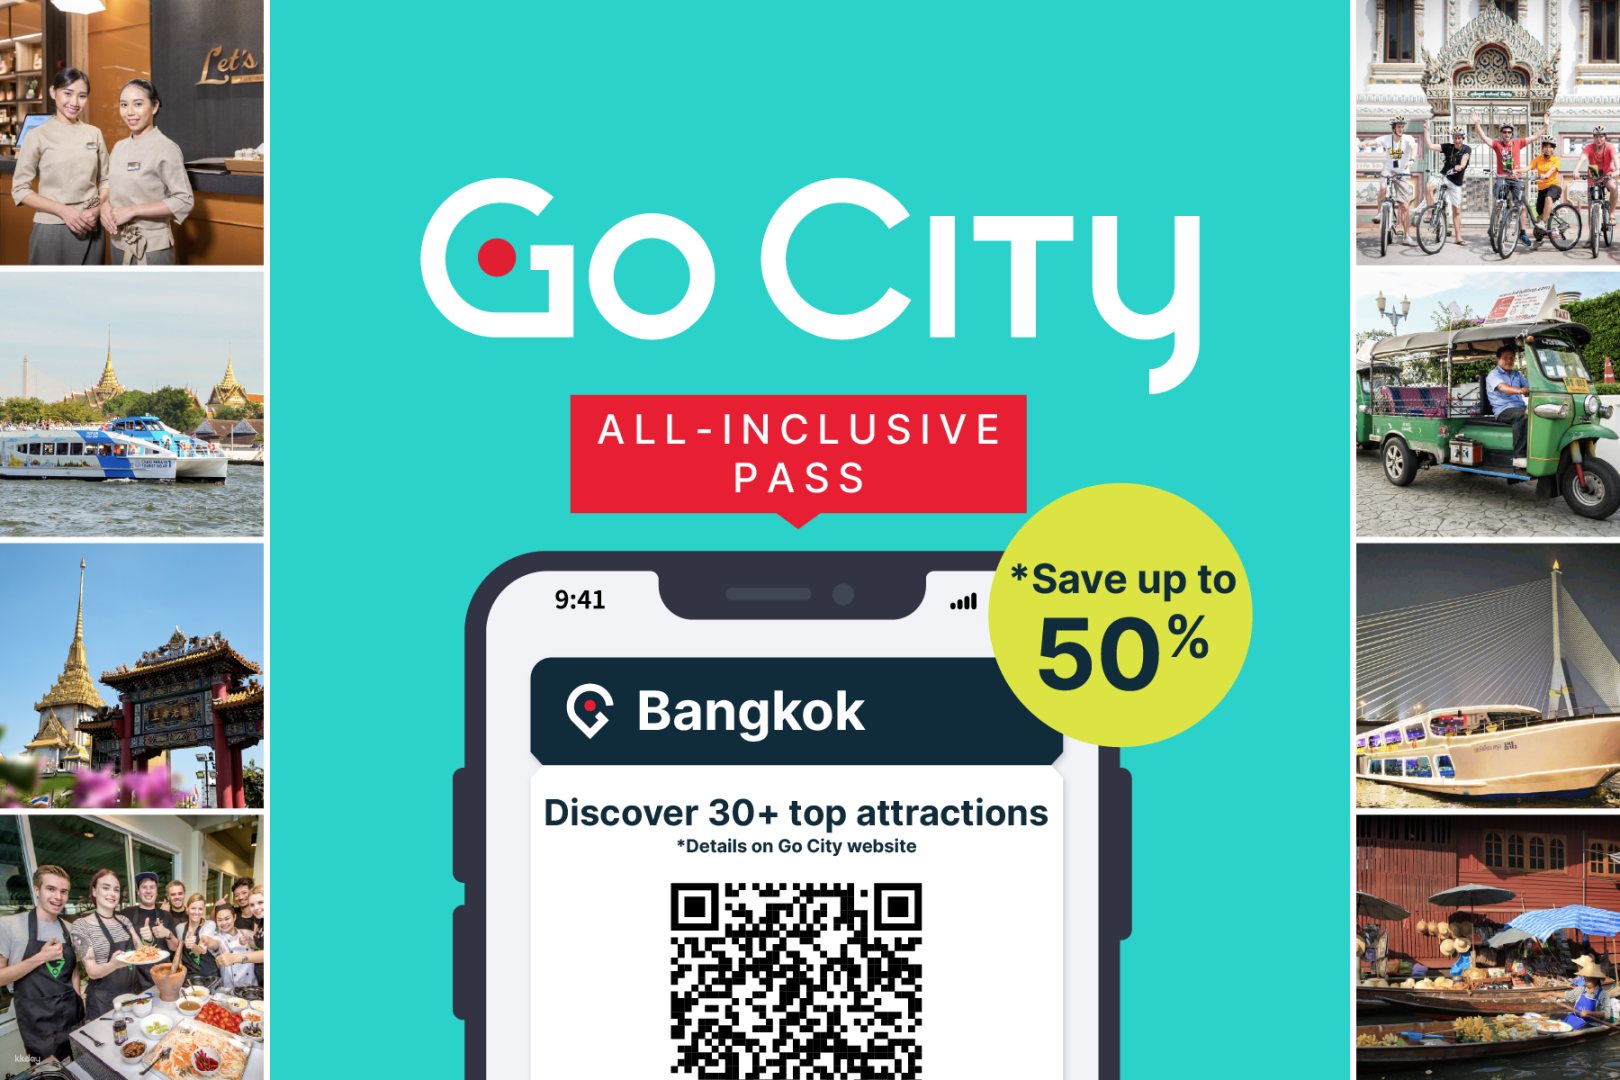 泰國-曼谷Go City| 曼谷全包通行證(包括2小時的瑪麗蓮號晚餐遊船和Let’s Relax Spa泰式按摩)